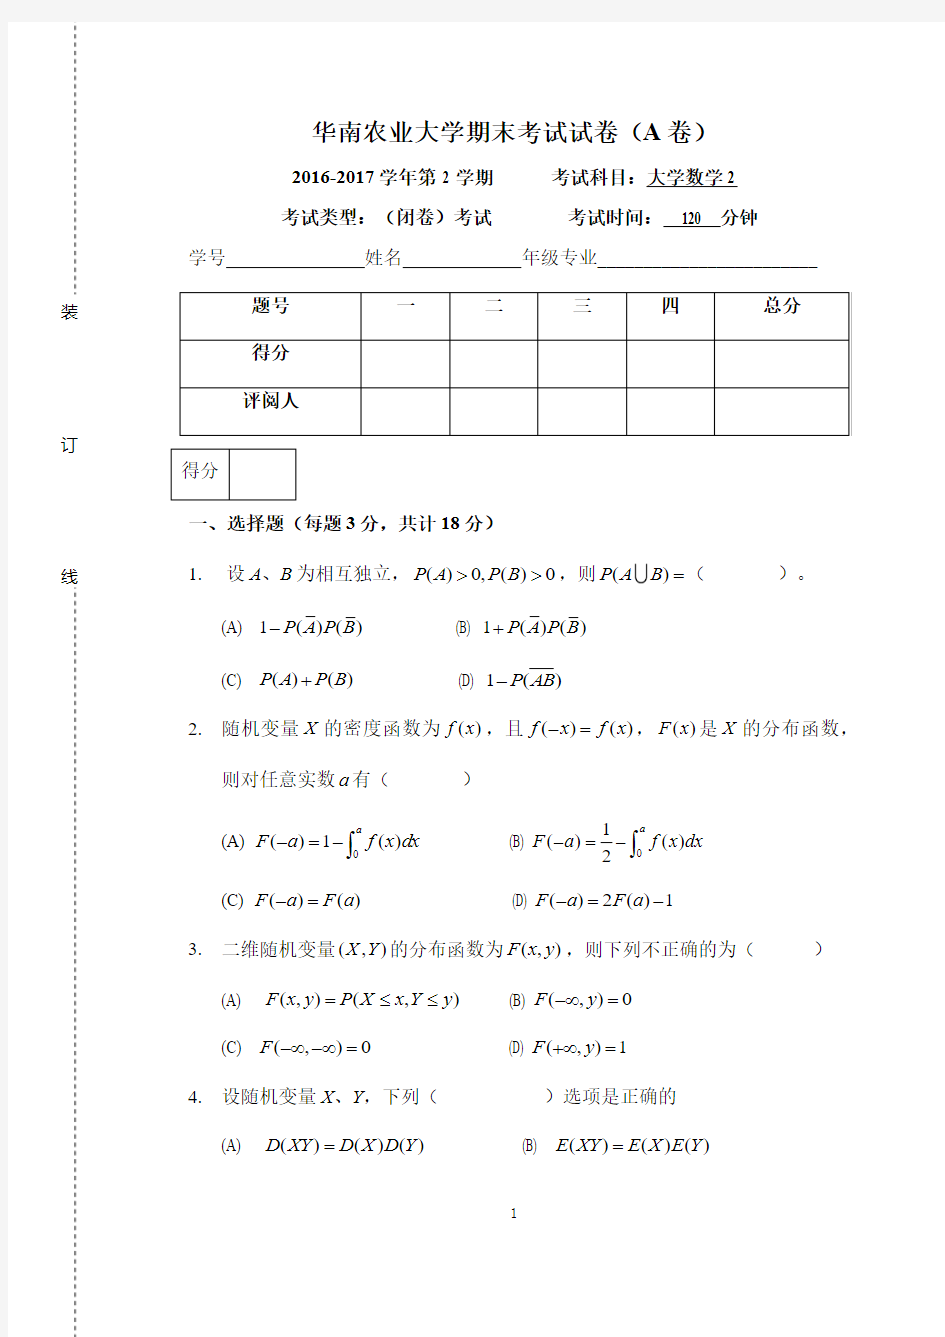 2016-17-1华南农业大学大学数学2试卷(1)